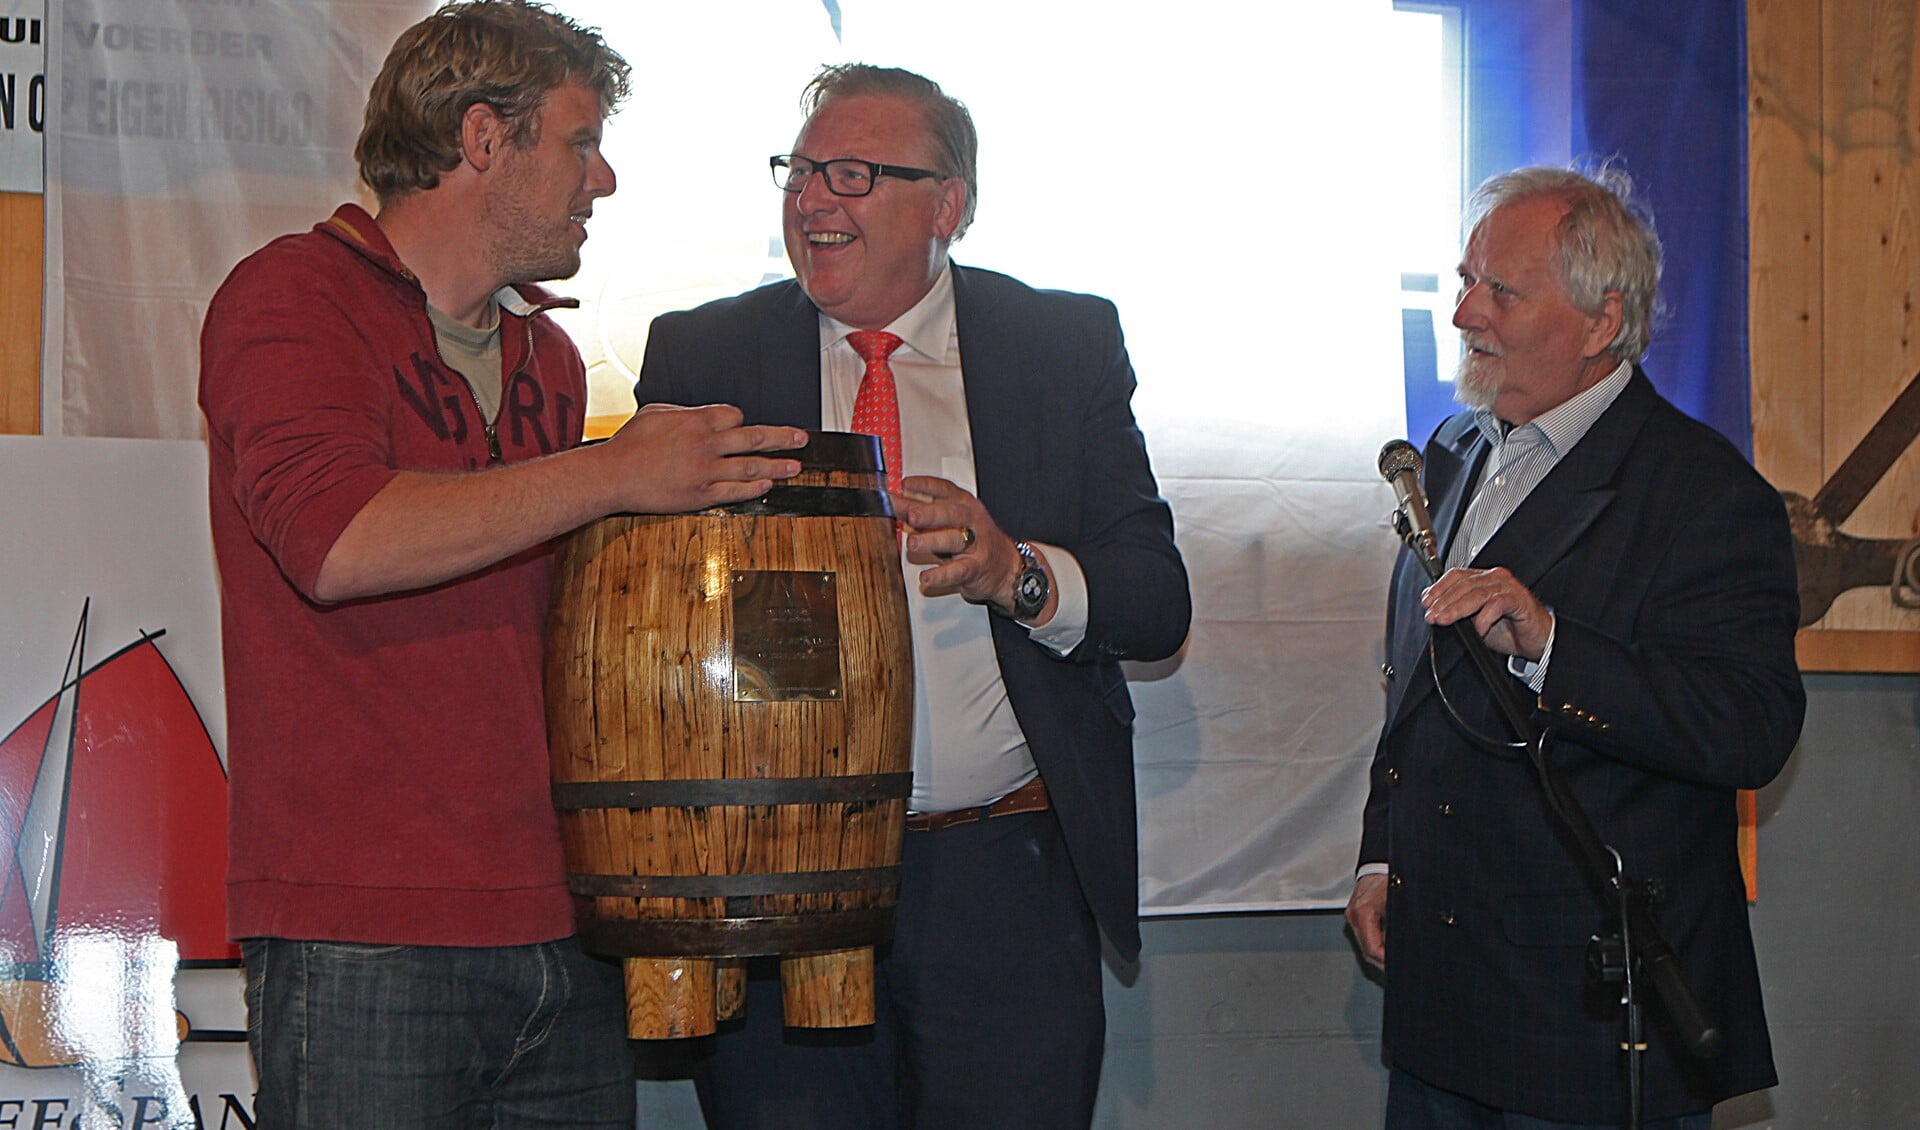 De schipper van de BU 20 neemt samen met de burgemeester van Bunschoten het gewonnen ZuiderzeeAnker in ontvangst.